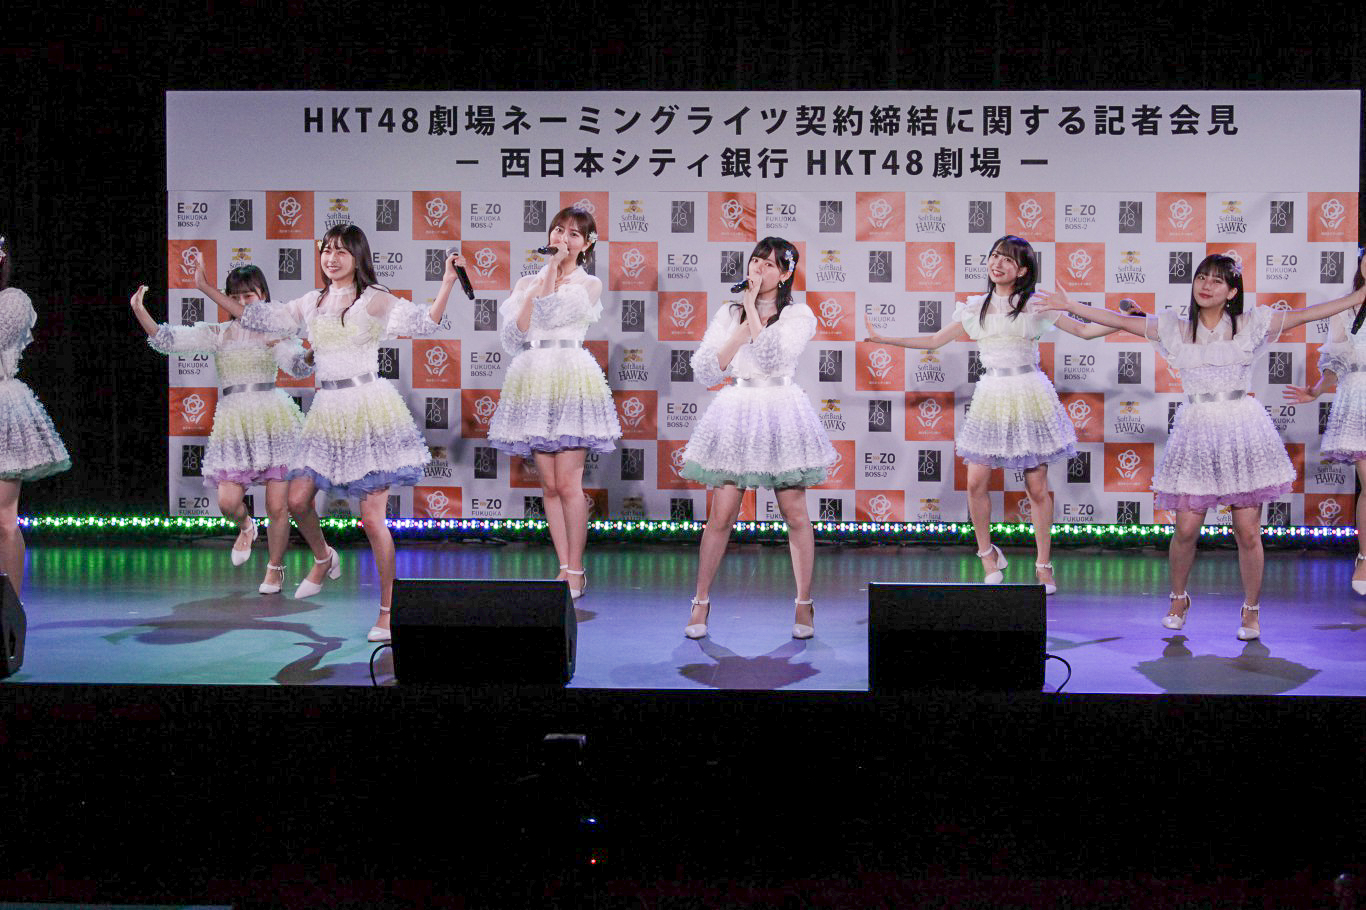 16名のメンバーがステージいっぱいに歌とダンスで「青春の出口」を披露②　HKT48